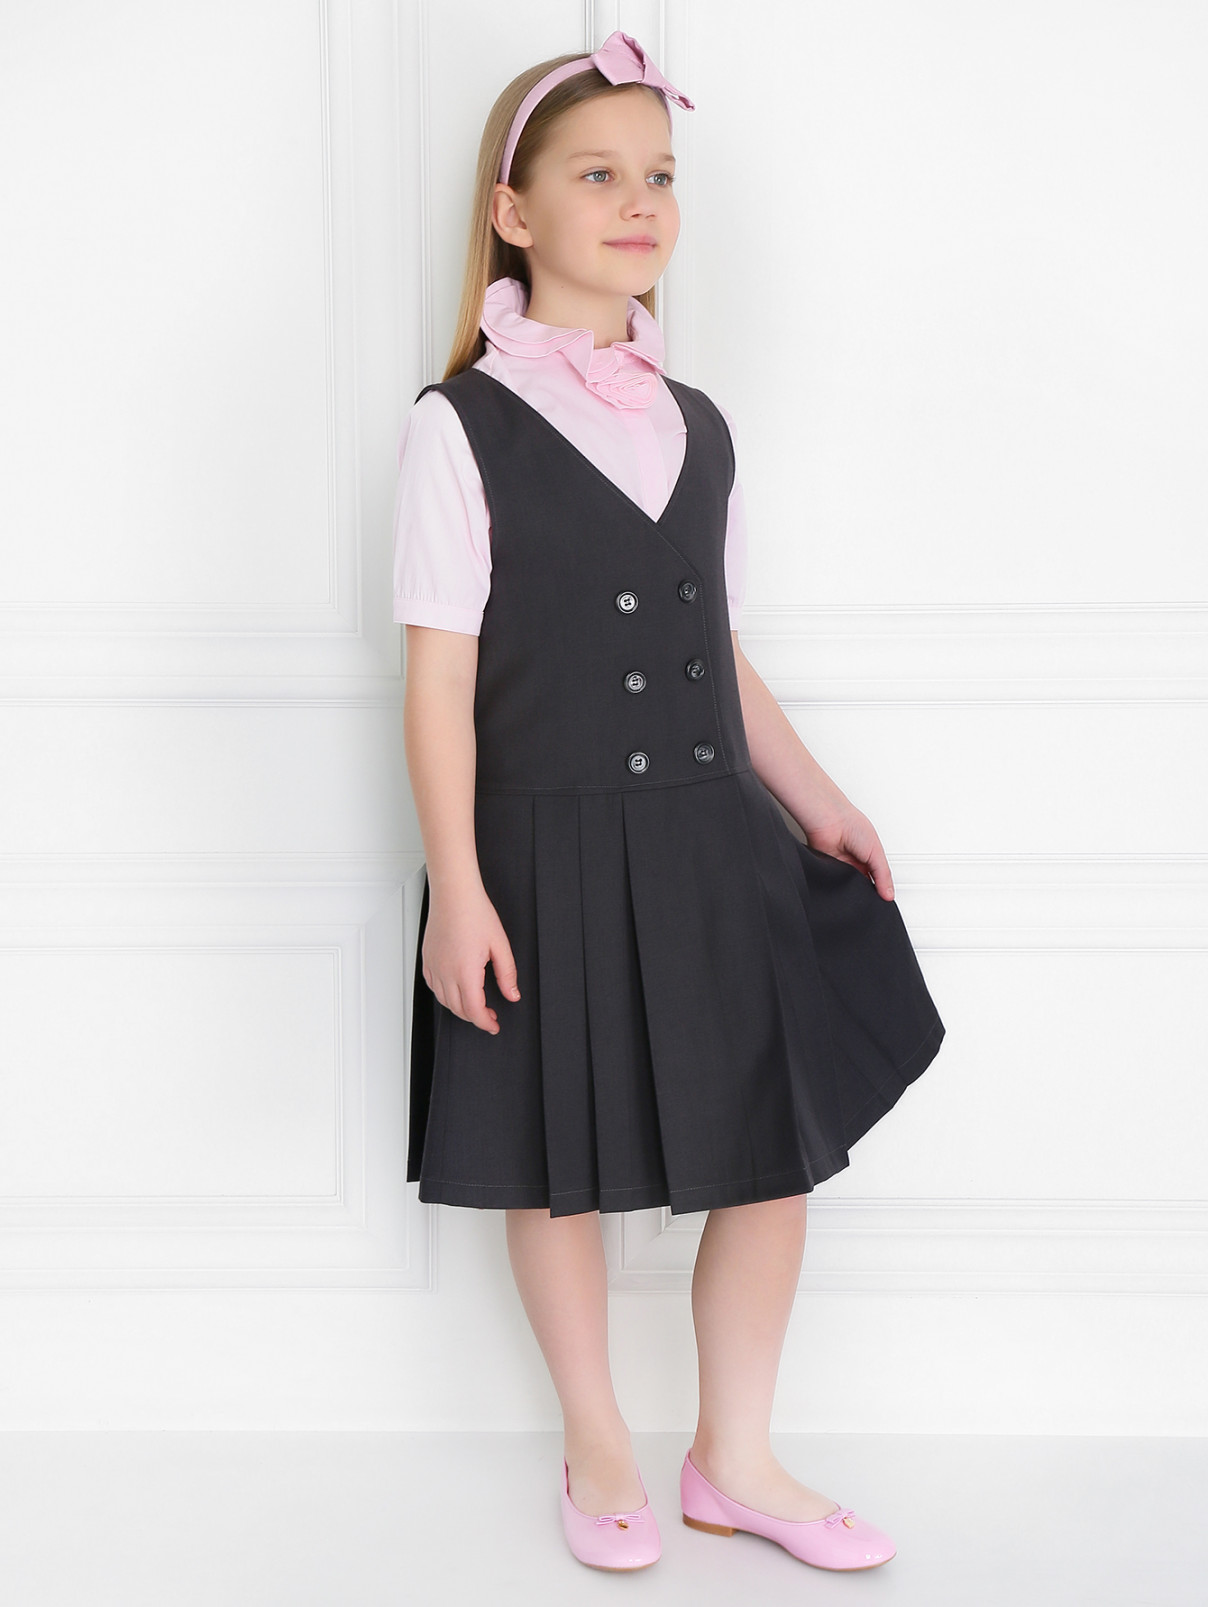 Платье на заниженной талии с юбкой-плиссэ Aletta Couture  –  Модель Общий вид  – Цвет:  Серый